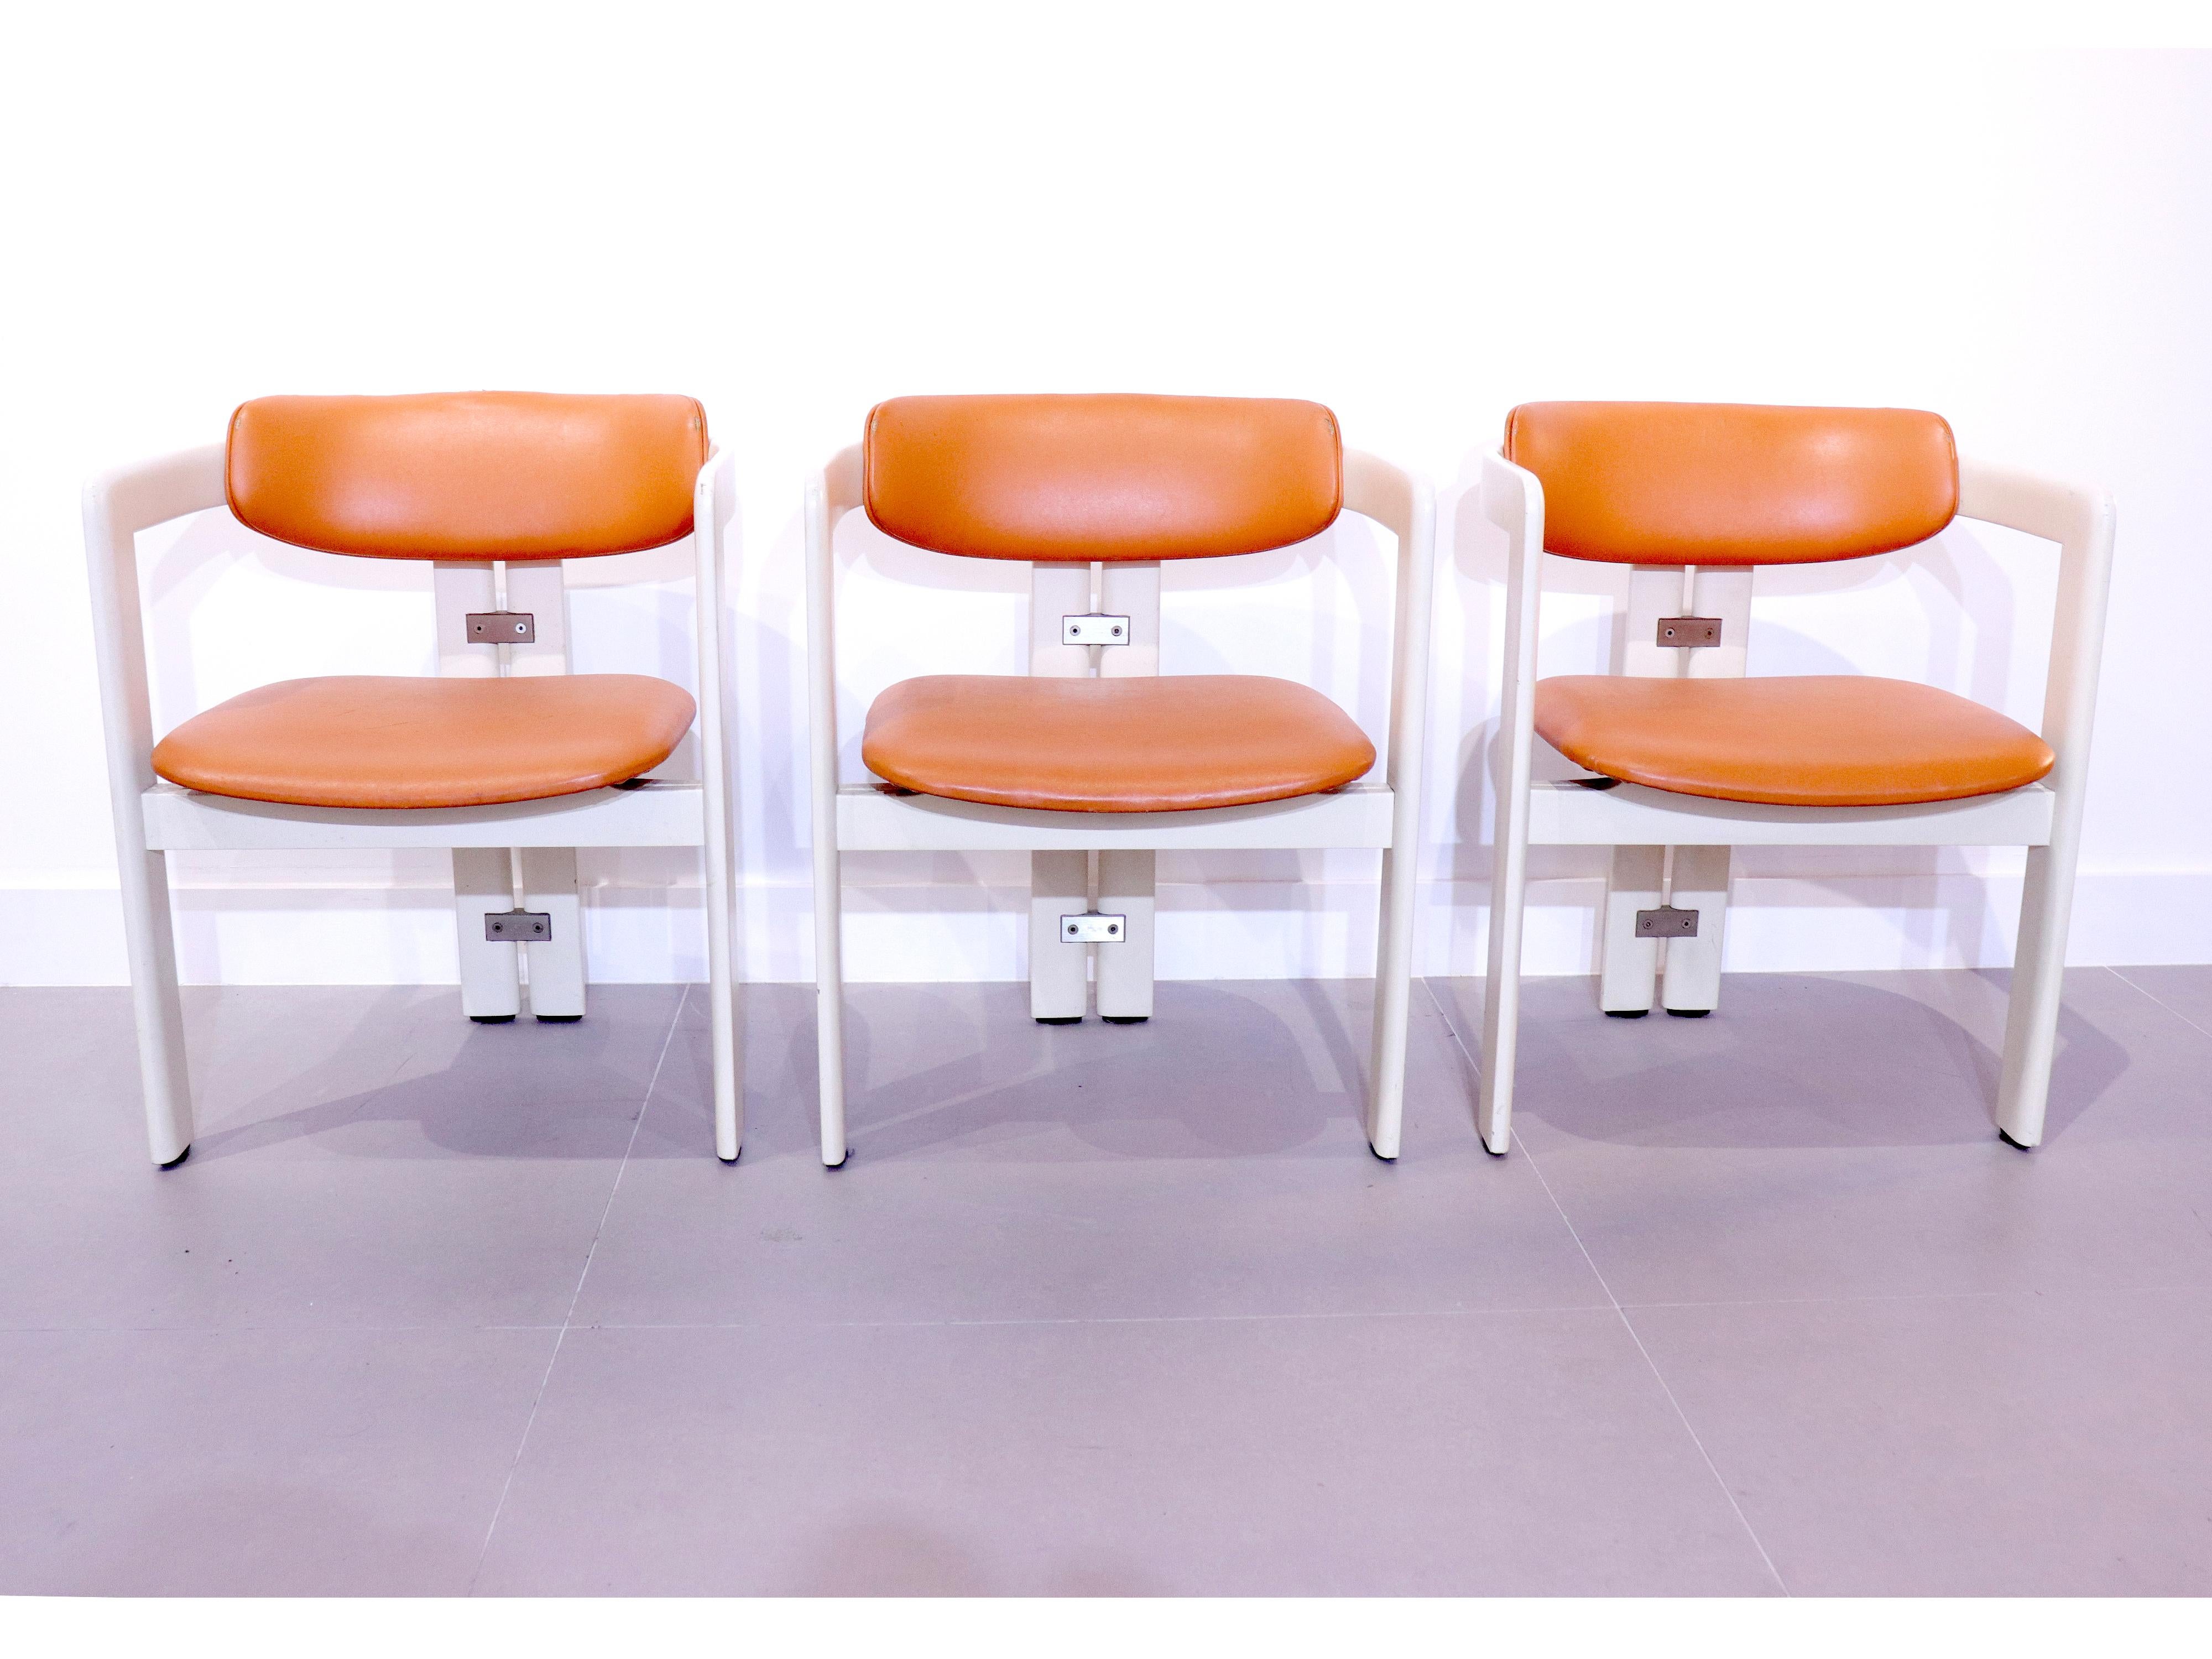 Seltener Satz von sechs Pamplona-Stühlen von Augusto Savini für Pozzi, Italien 1965.
Diese Sessel sind aus weiß lackiertem Holz mit orangefarbener Originalpolsterung.
Ein ikonisches und sofort erkennbares Design, einfach und doch stark in der Form